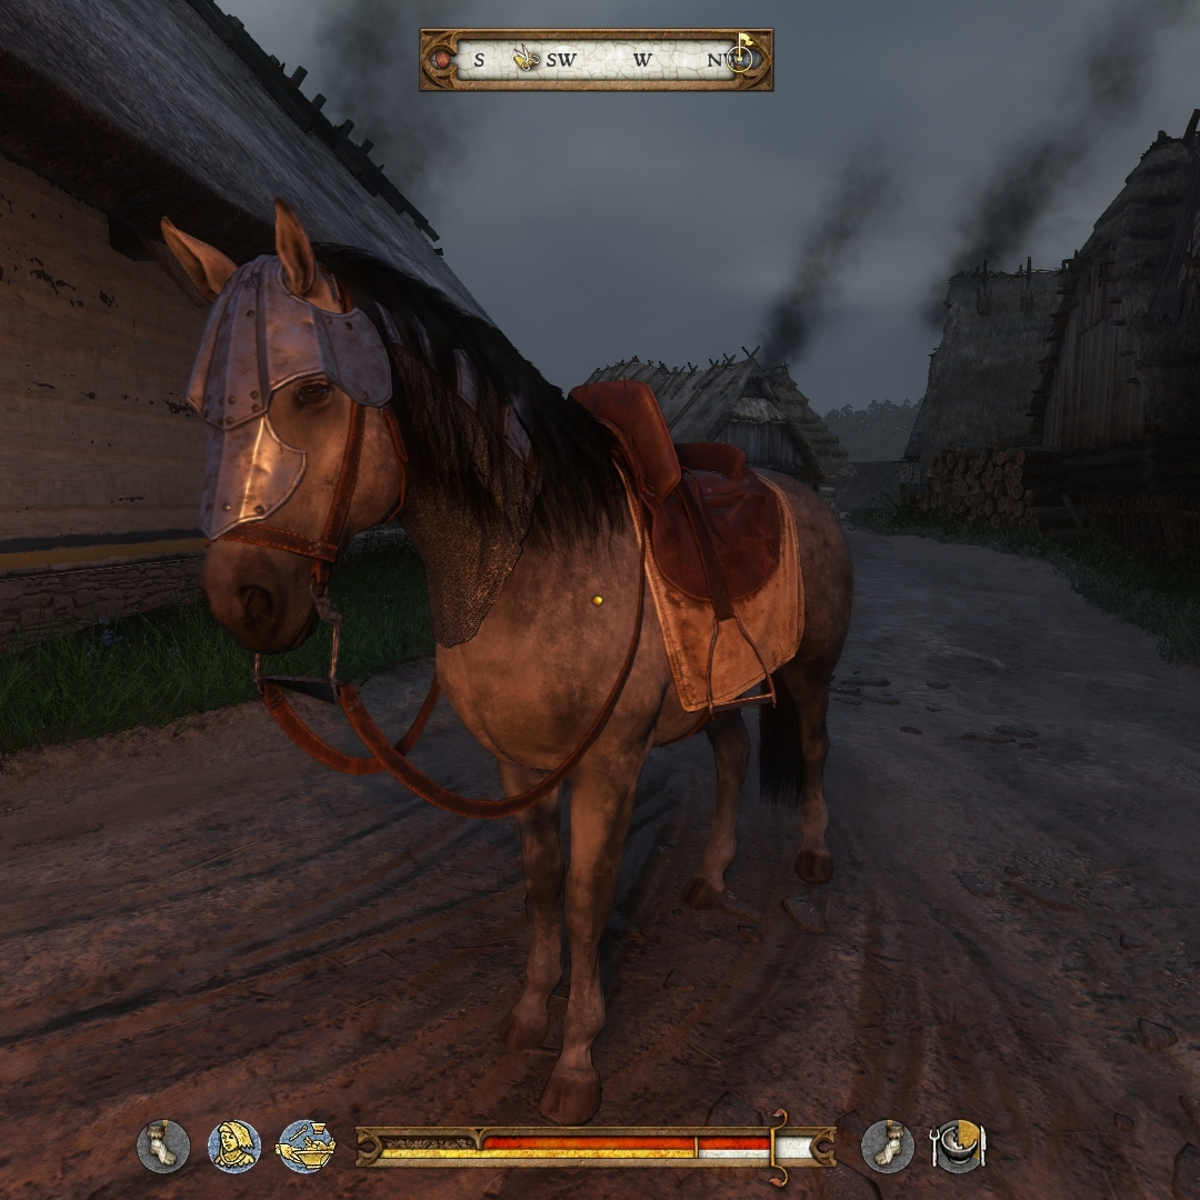 Análise: Em Kingdom (PC), governe com quatro teclas e um cavalo